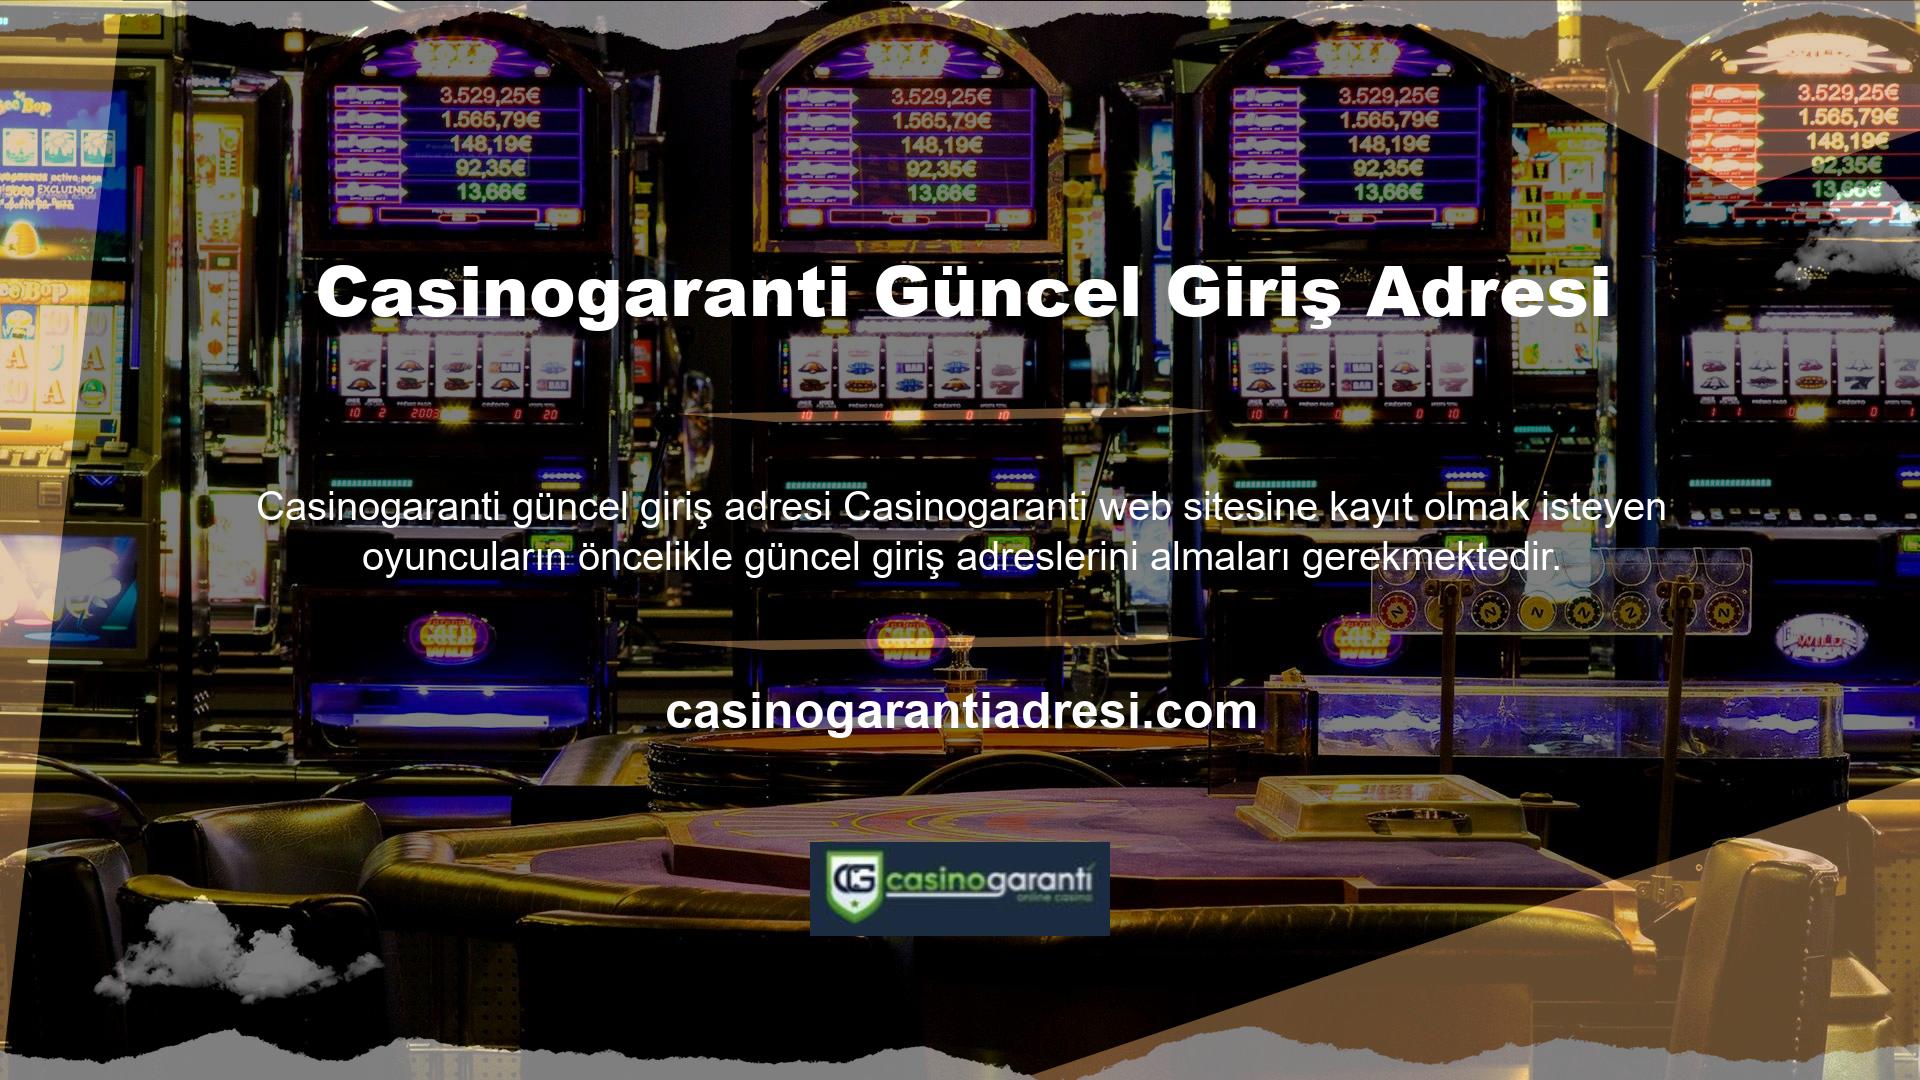 Casinogaranti güncel giriş adresini kullanan online casino sitesi Türkiye'de yasal olarak faaliyet göstermemektedir ve site kullanıcılarının ve sitenin güvenliğini sağlamak amacıyla adres zaman zaman değişebilir